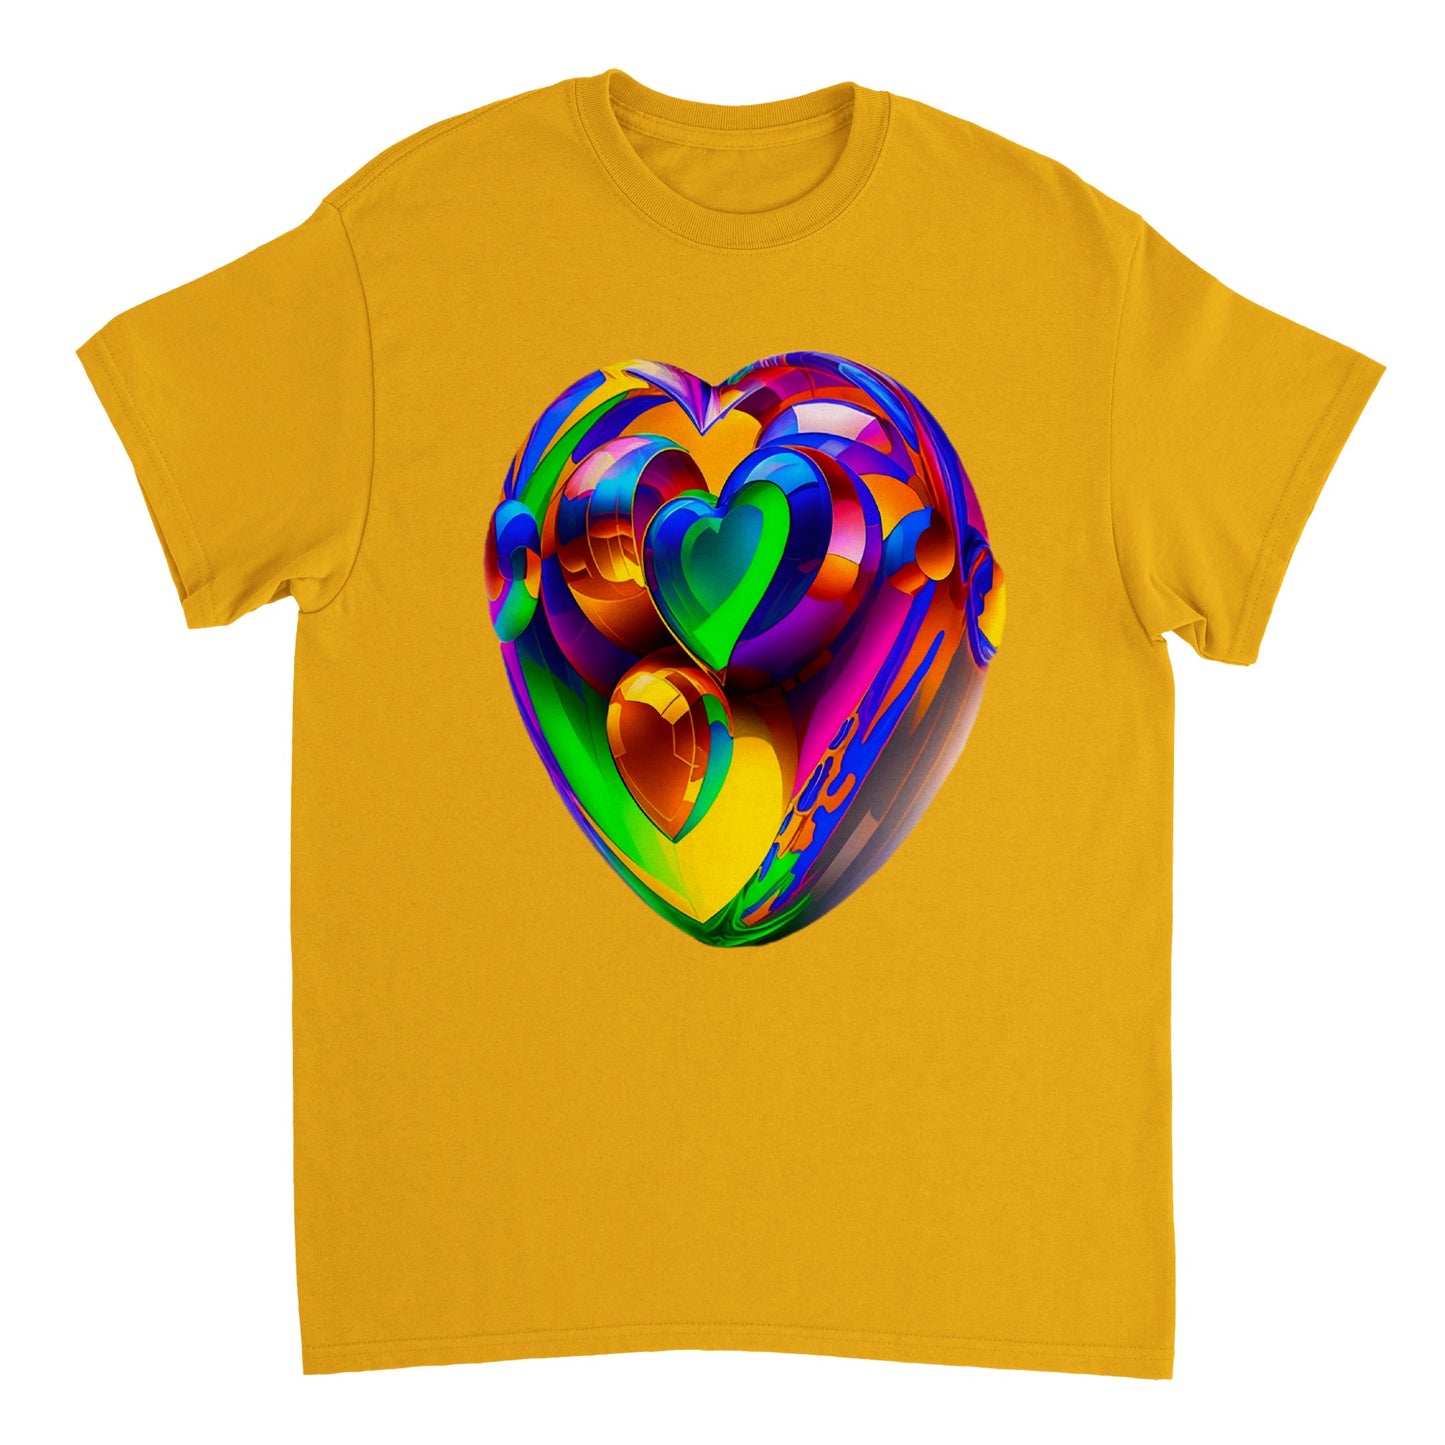 Love Heart - Heavyweight Unisex Crewneck T-shirt 54